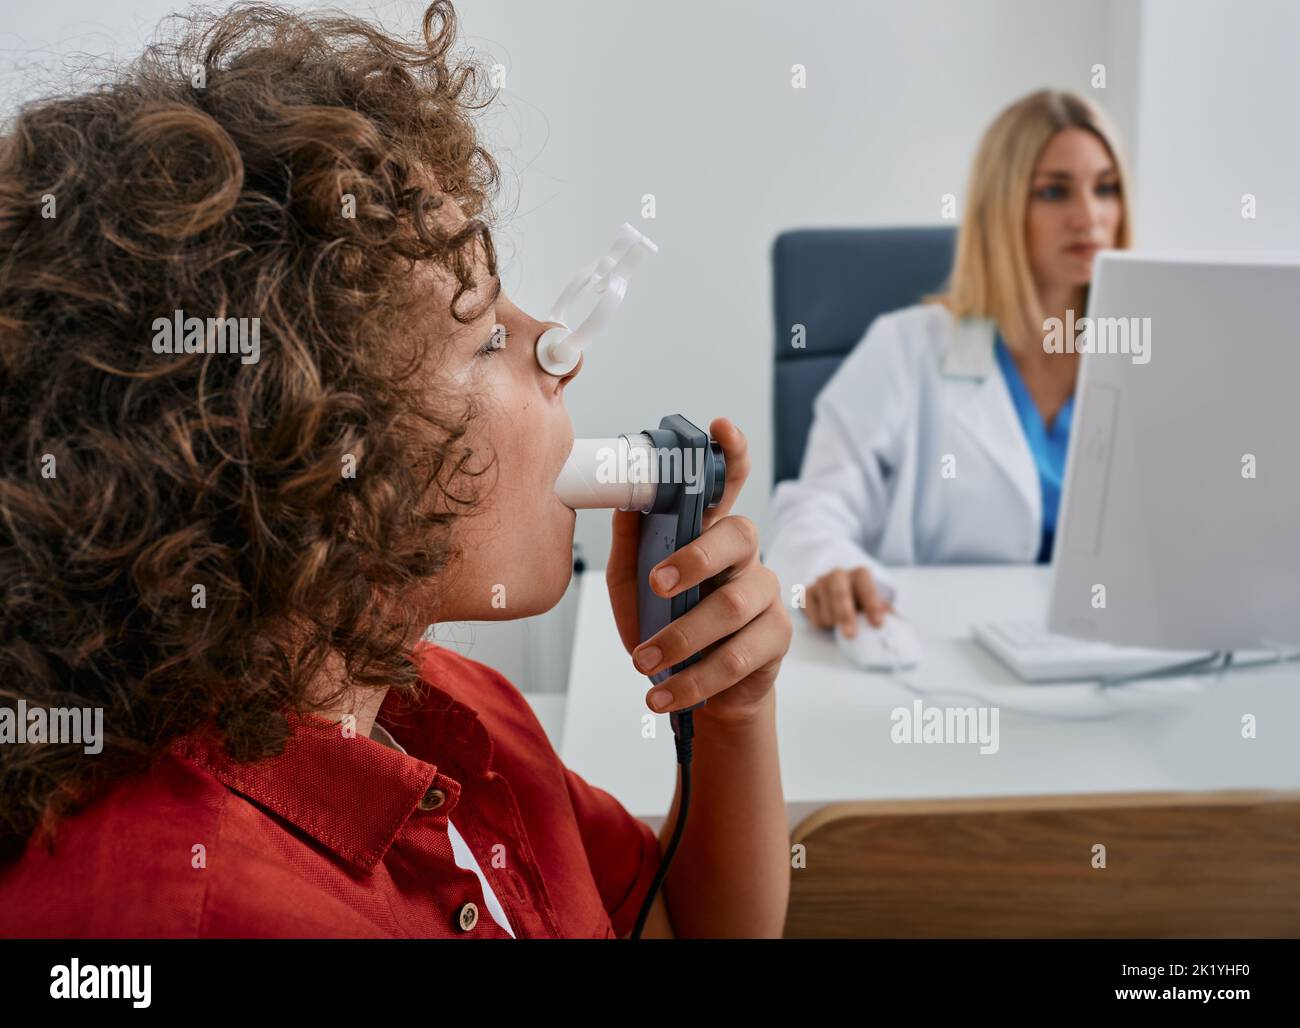 Bambino maschio durante il test di spirometria respiratoria e di funzionalità polmonare utilizzando spirometro medico con il medico che controlla i risultati del test sul monitor Foto Stock